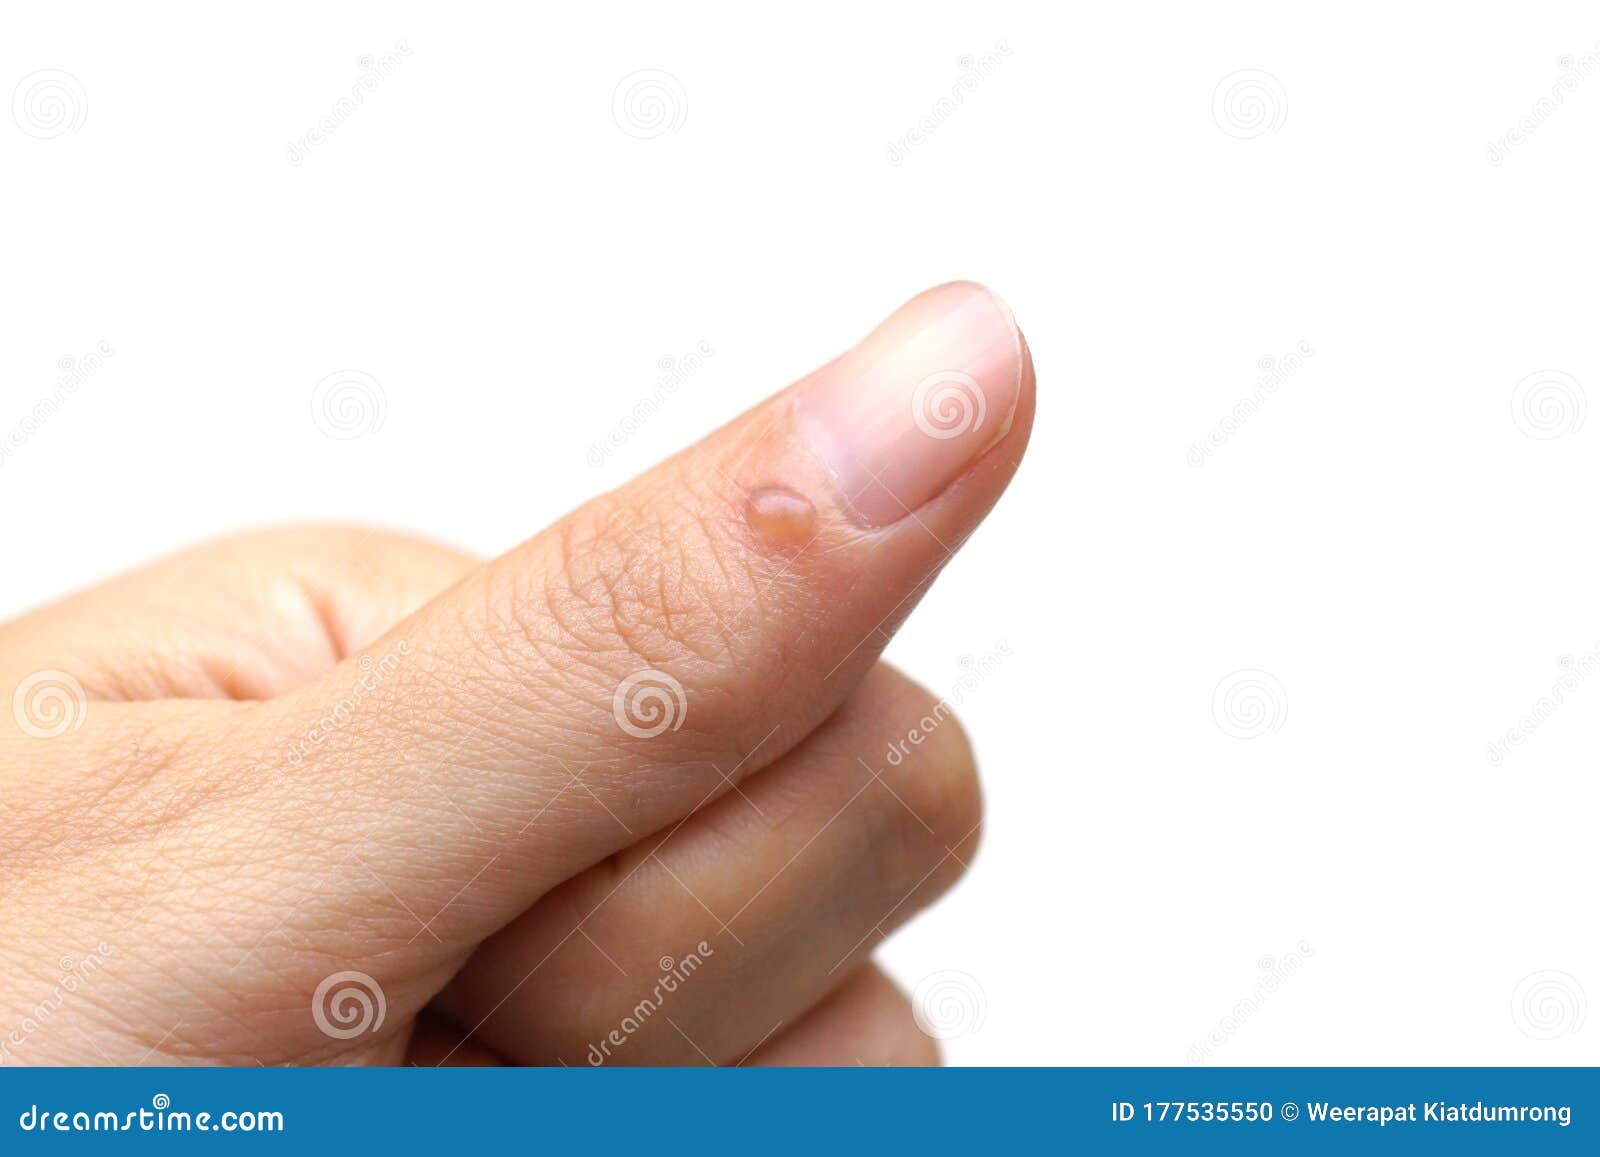 Queimadura no dedo foto de stock. Imagem de isolado - 177535550